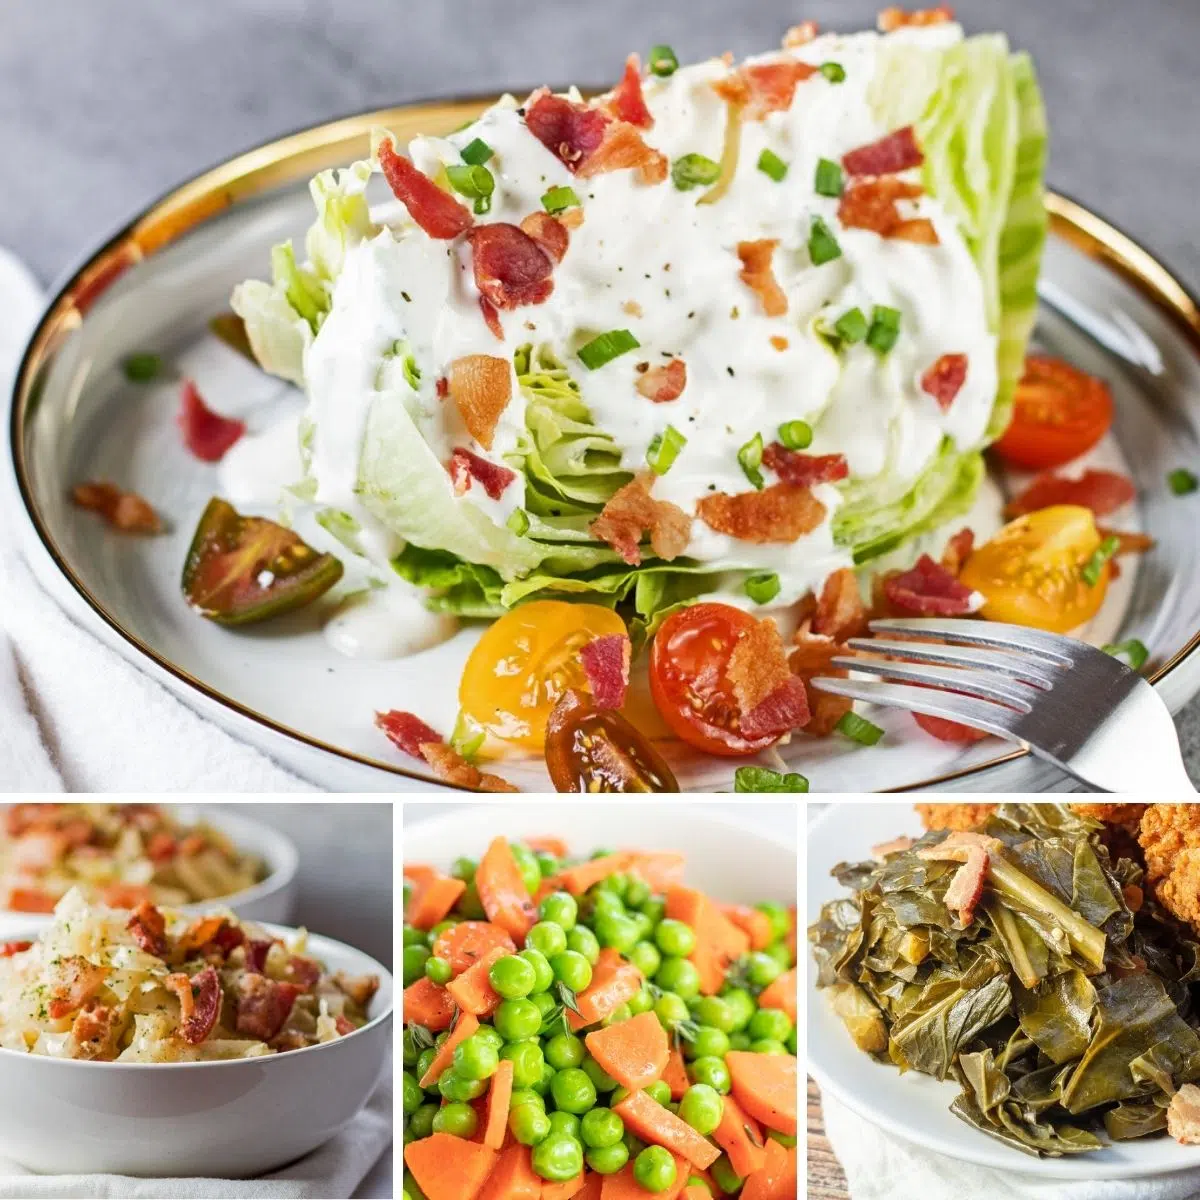 Os melhores acompanhamentos de vegetais para servir com qualquer refeição, conforme mostrado com essas 4 receitas em destaque em uma imagem de colagem.